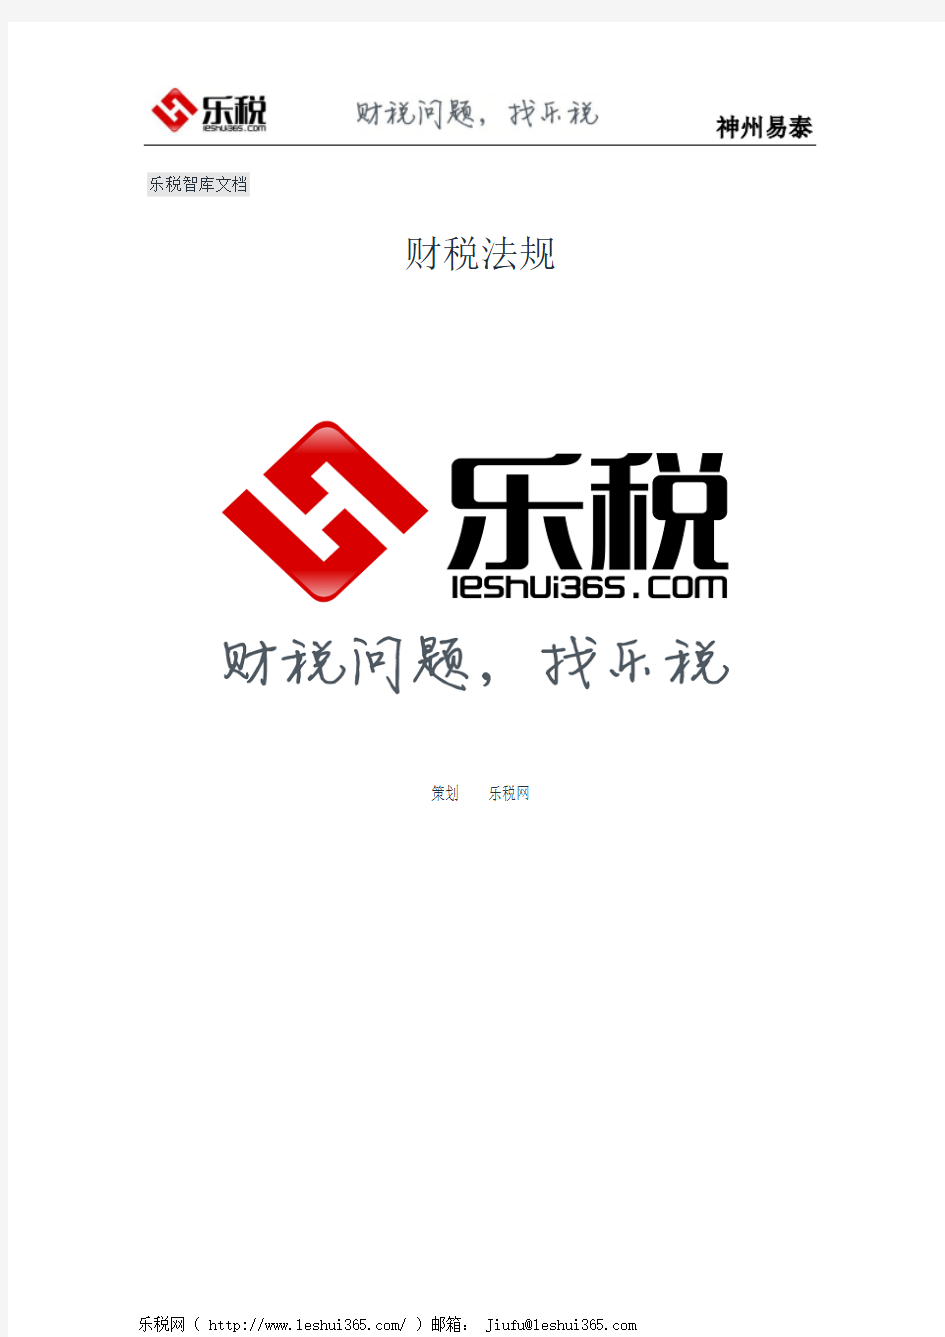 北京市地方税务局关于确定税务登记地点和纳税地点有关问题的通知